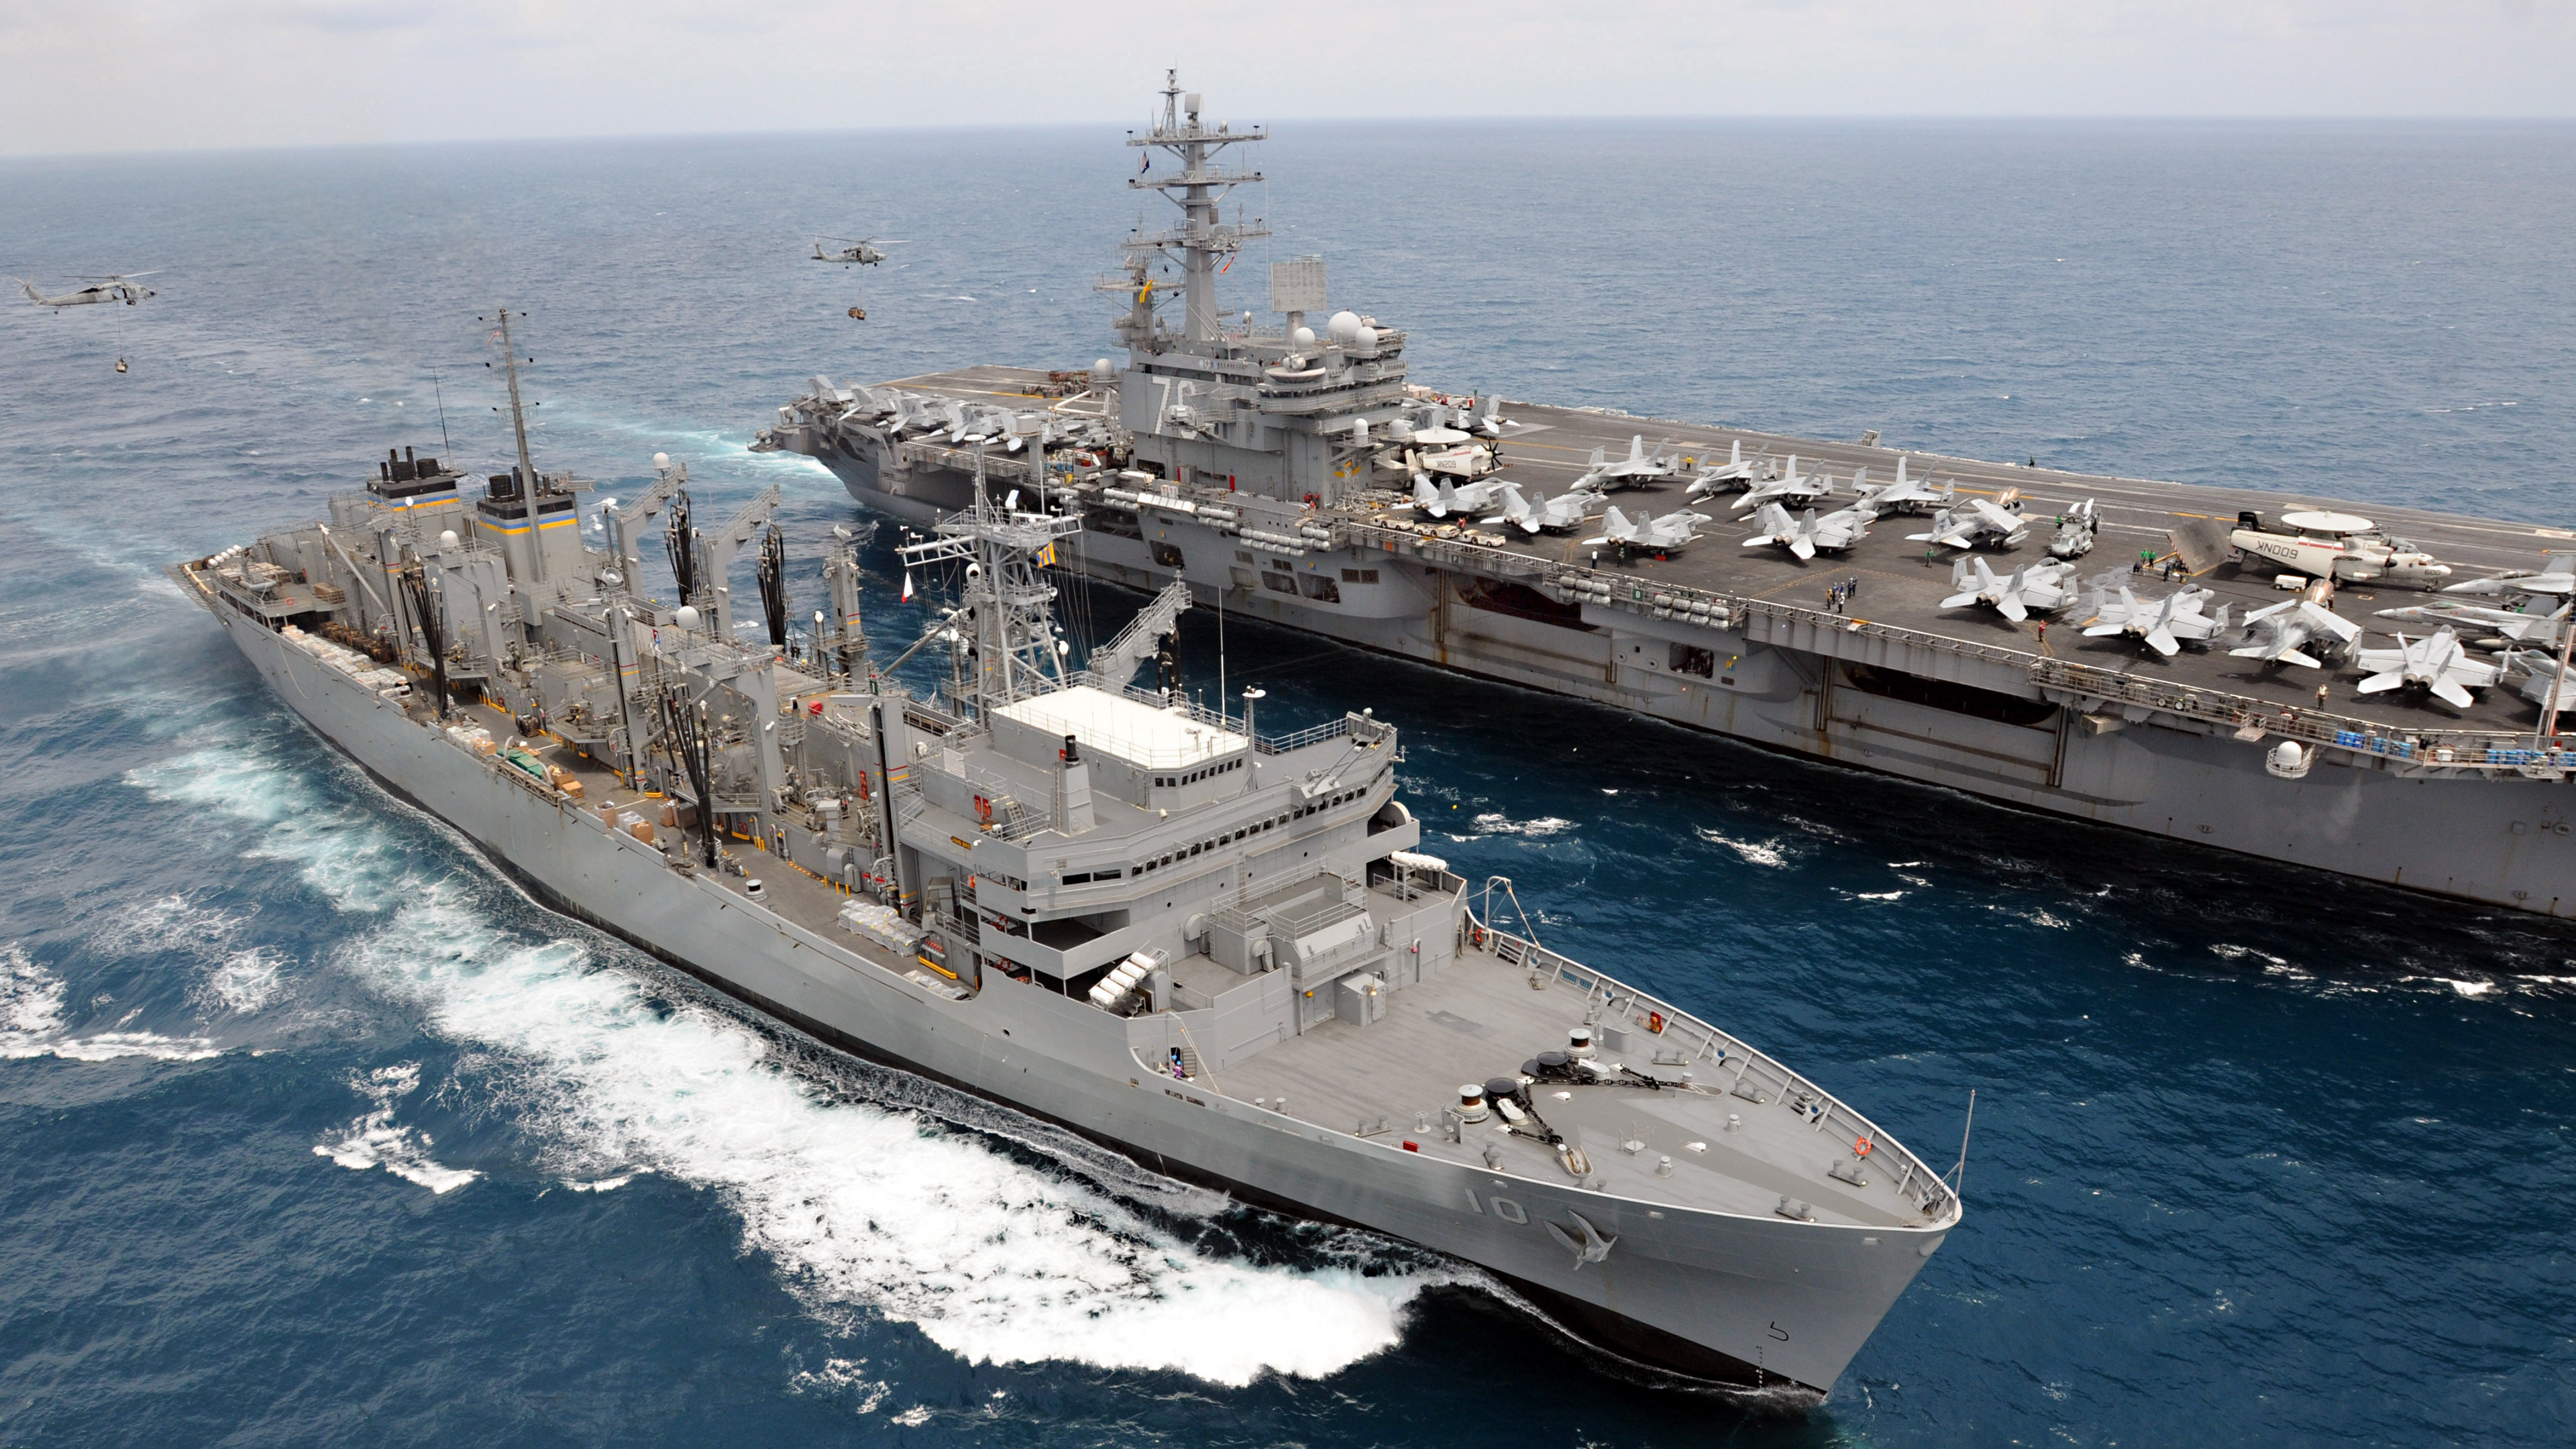 Schnelle Kampfunterstützung Schiff, Flugzeugträger, USS Ronald Reagan, United States Navy, Kriegsschiff. Wallpaper in 3840x2160 Resolution